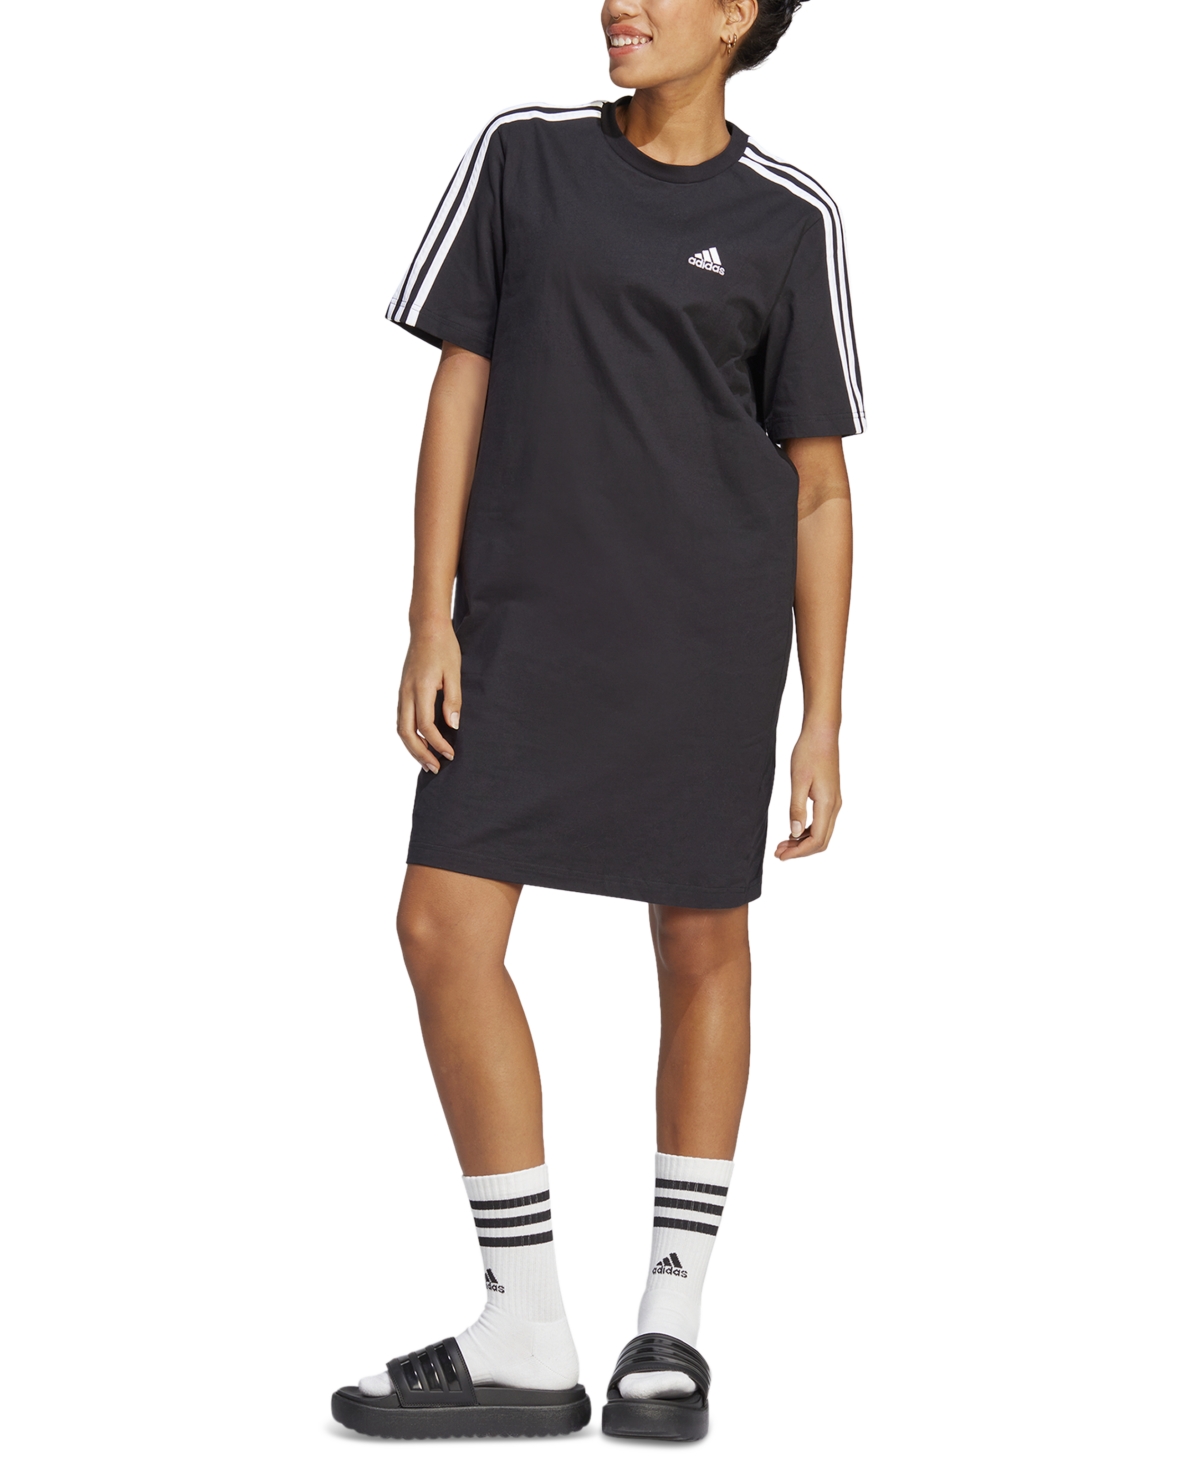 Adidas Originals Women's Active Essentials 3-stripes Single Jersey Boyfriend Tee Dress In Black